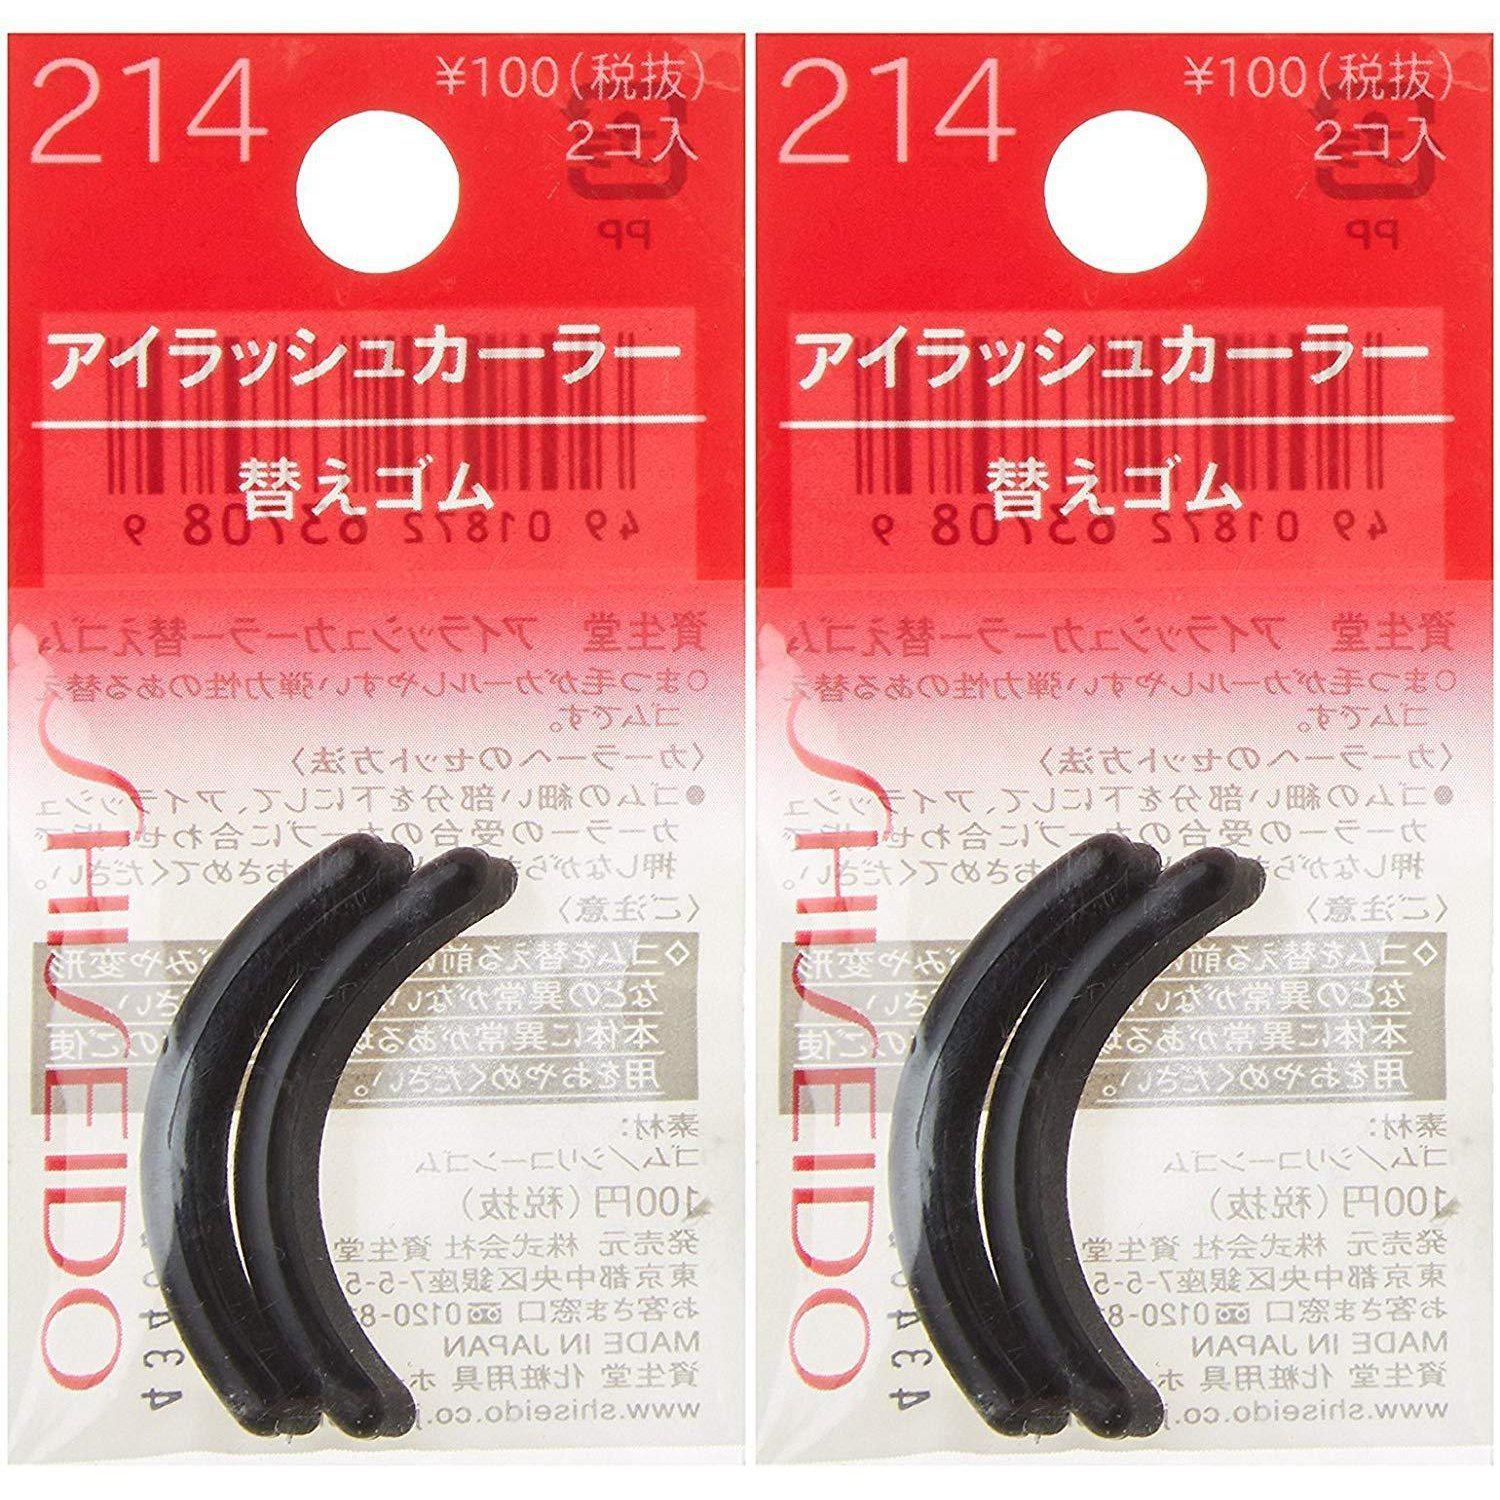 Shiseido Eyelash Curler Rubber Pad Refills 214 (Pack of 2)